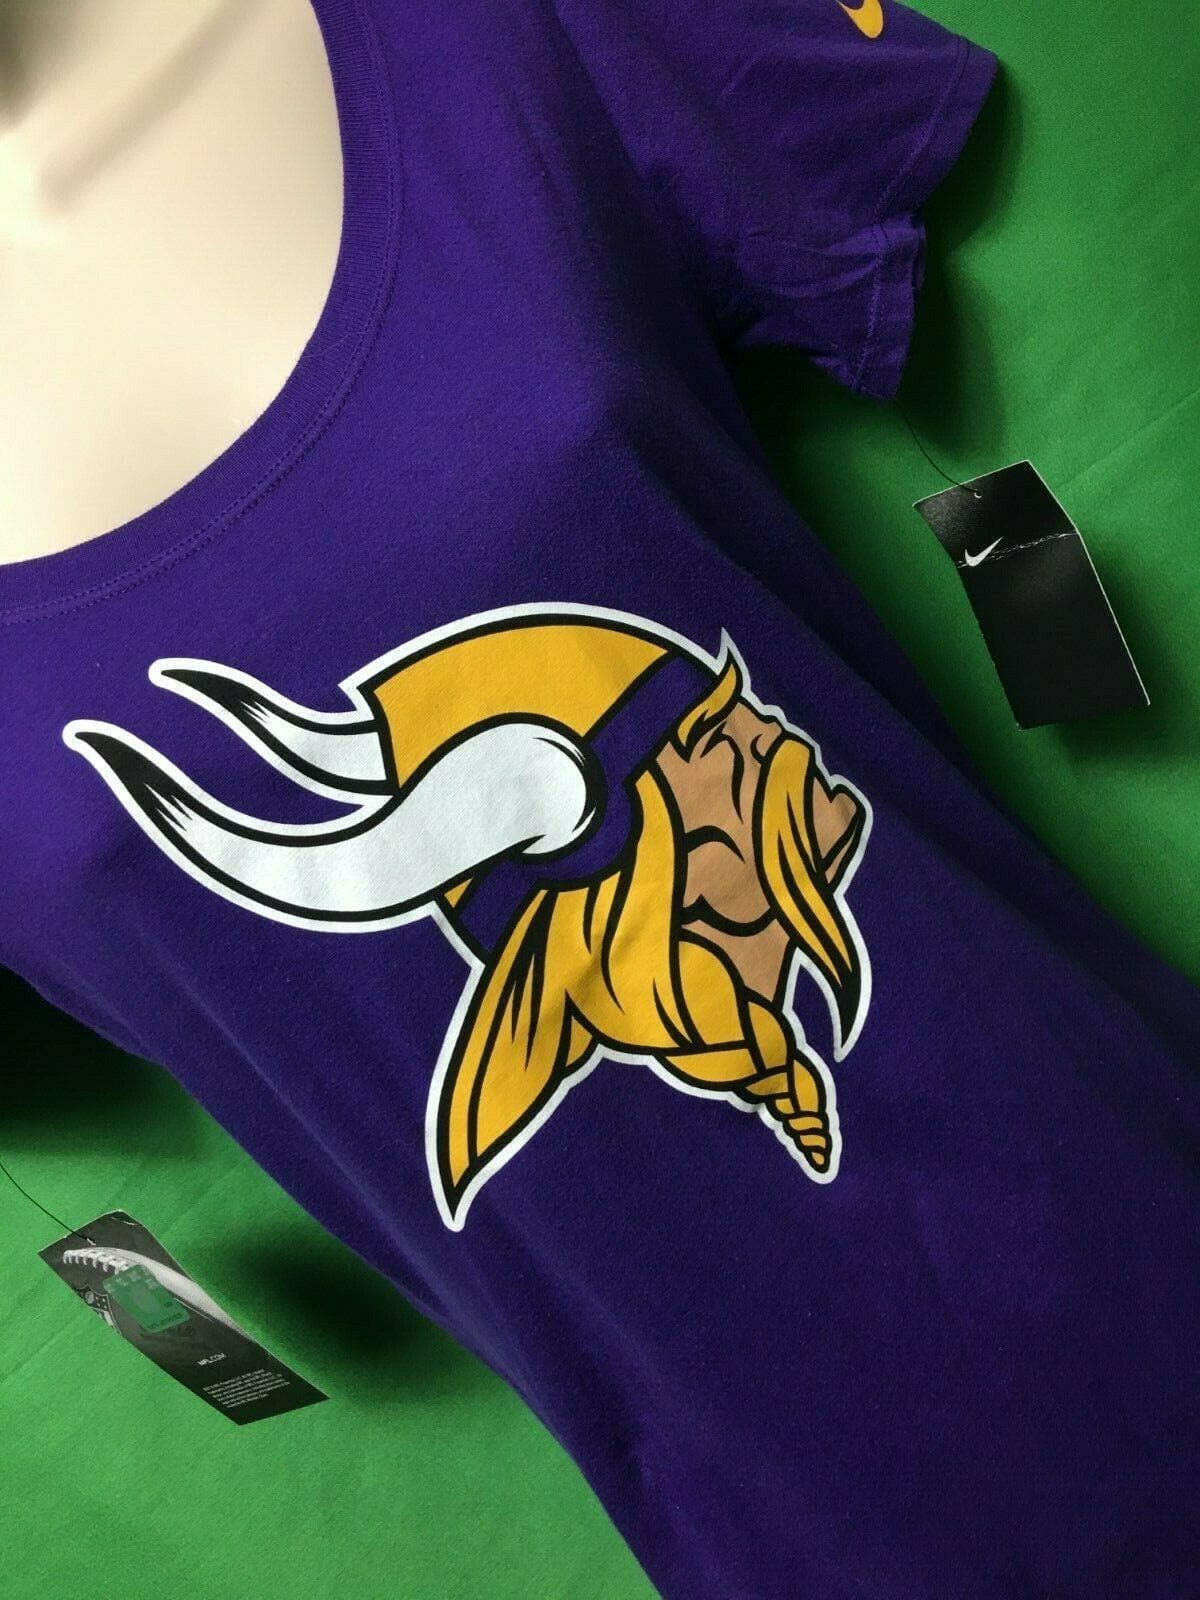 NFL Minnesota Vikings Deep Purple T-Shirt Women's X-Small NWT